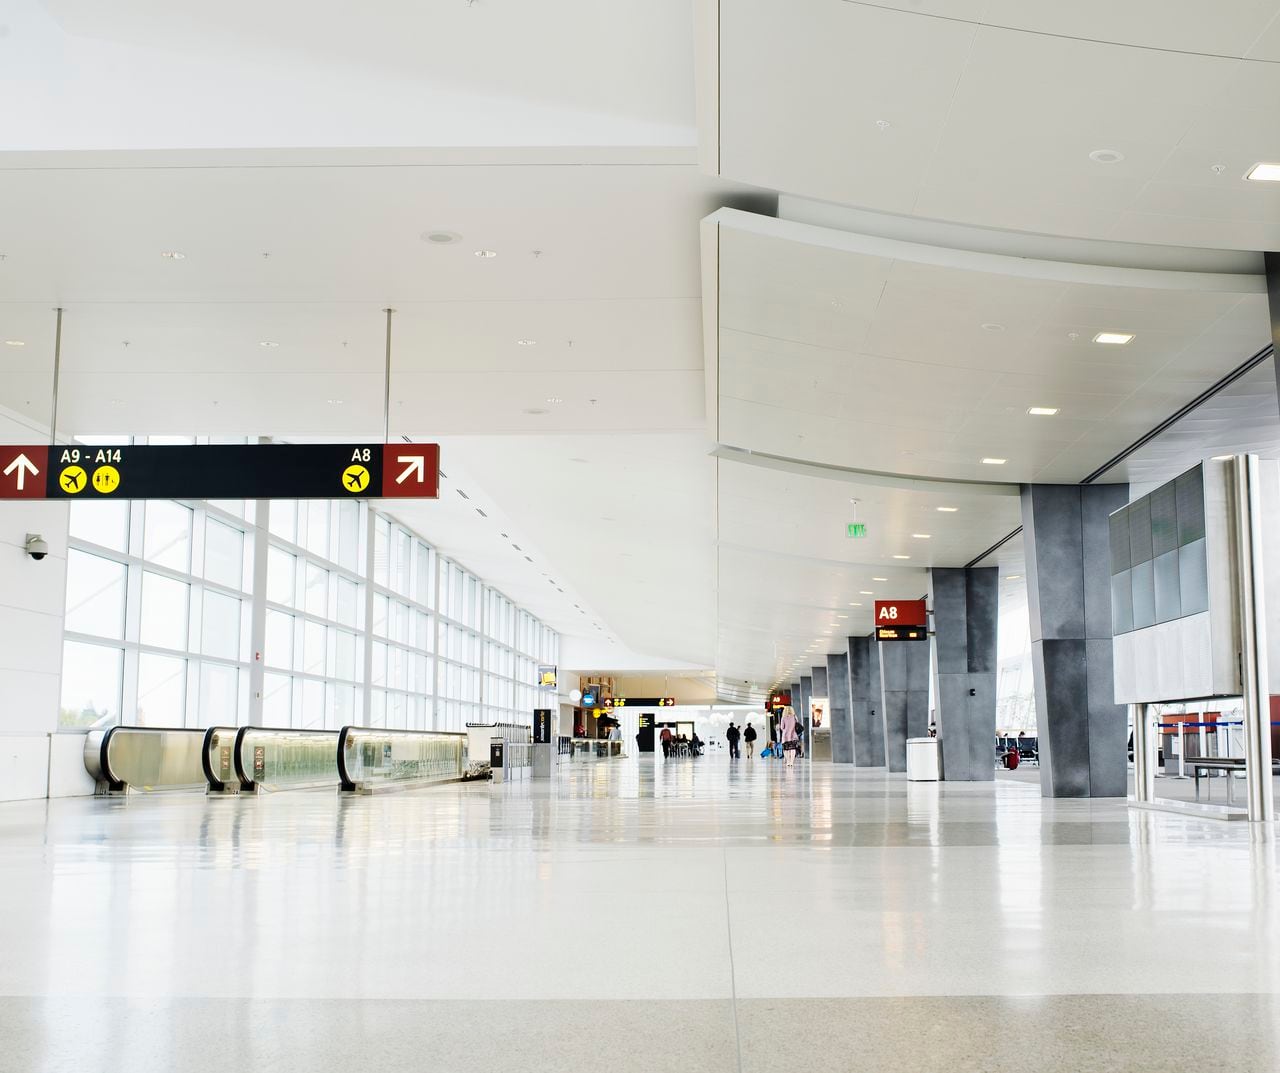 La firma calificó a más de 500 aeropuertos a nivel mundial